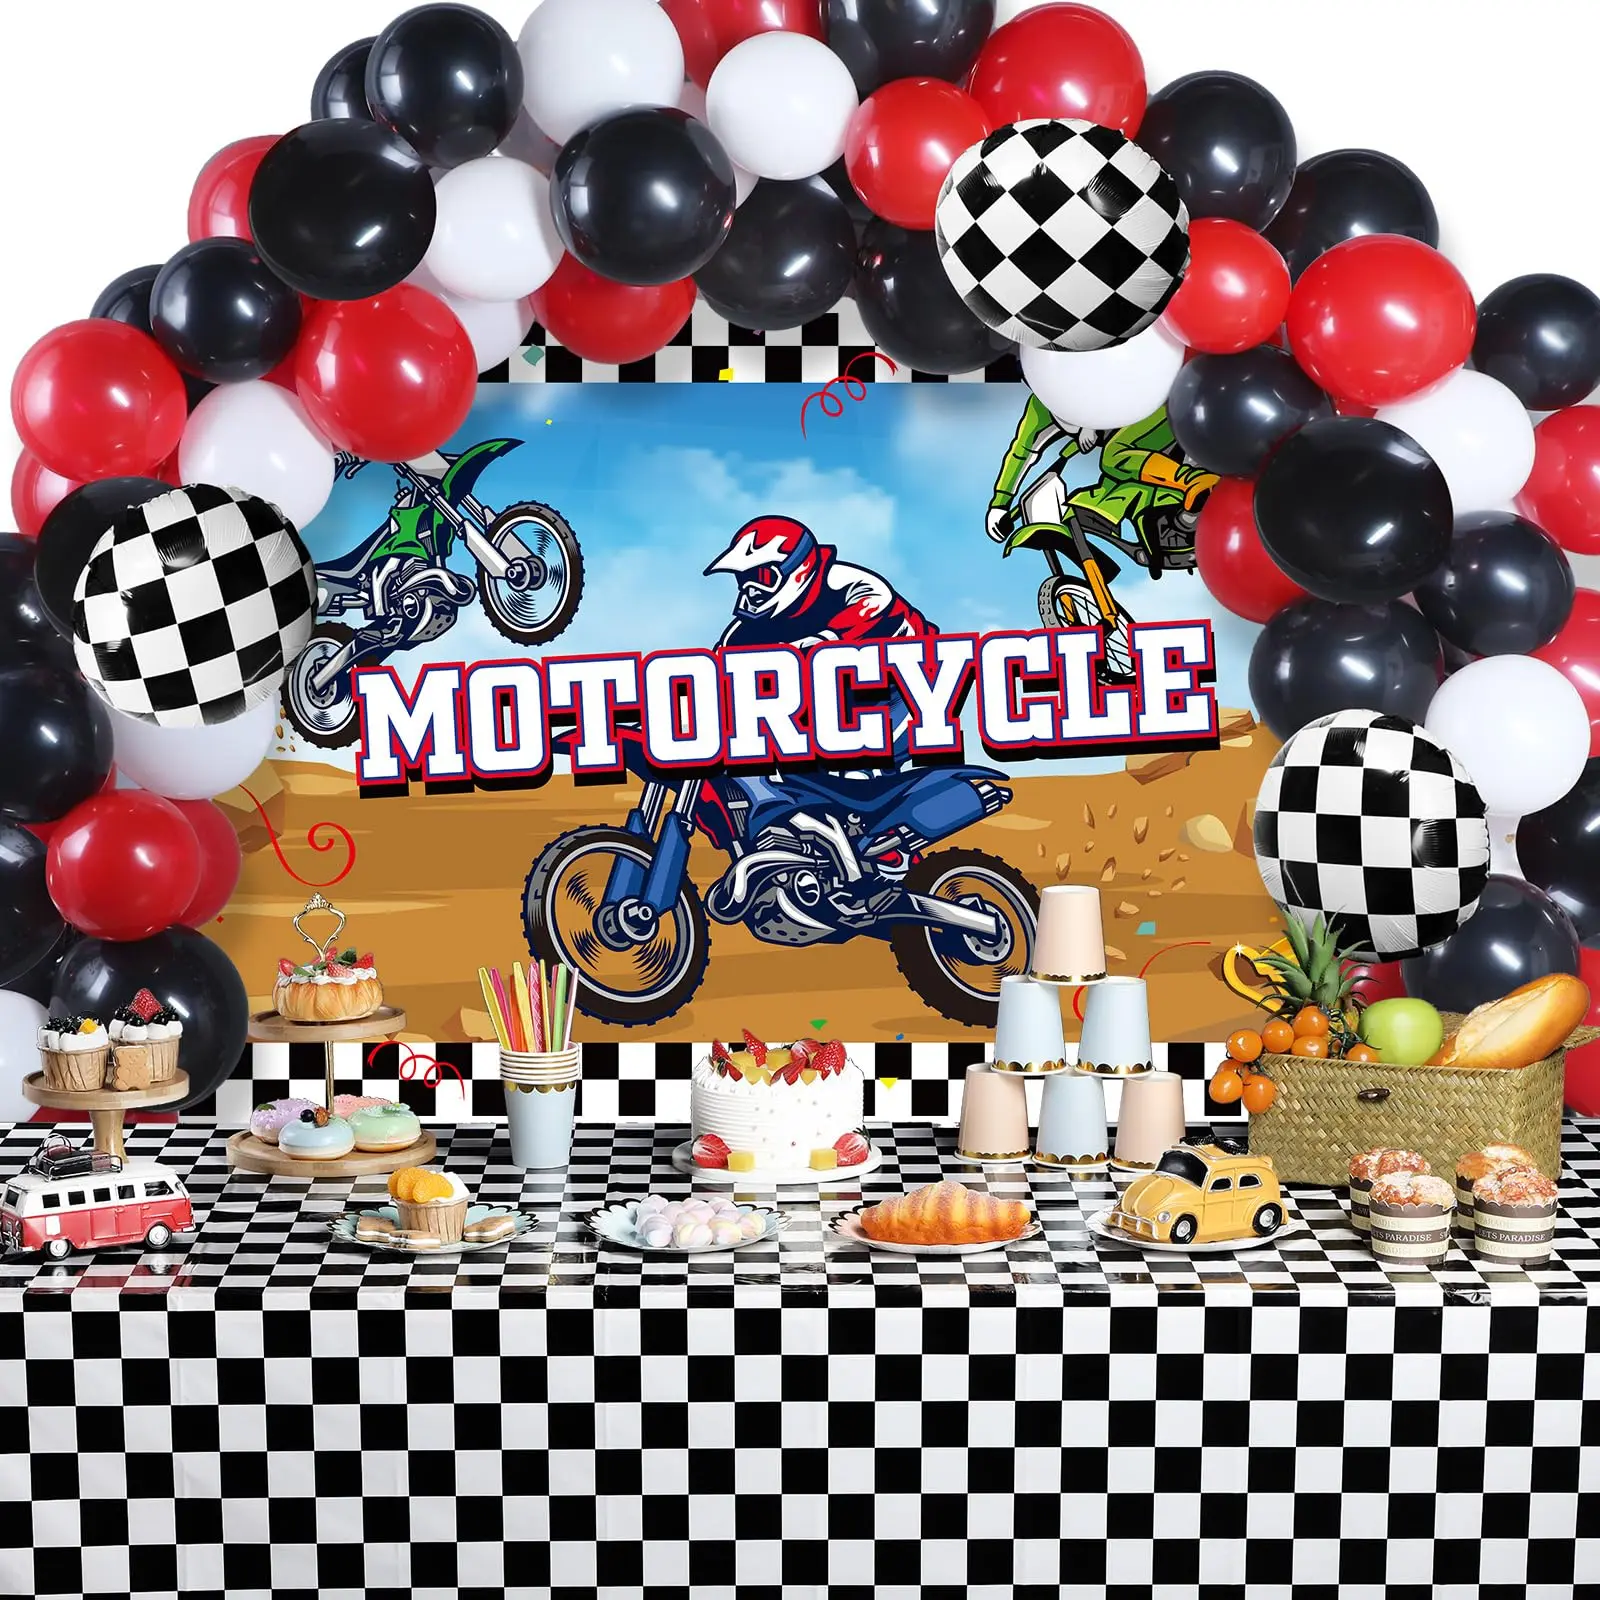 cumpleaños fiesta tematica de motos para adultos - Qué hacer en una fiesta de cumpleaños para adultos